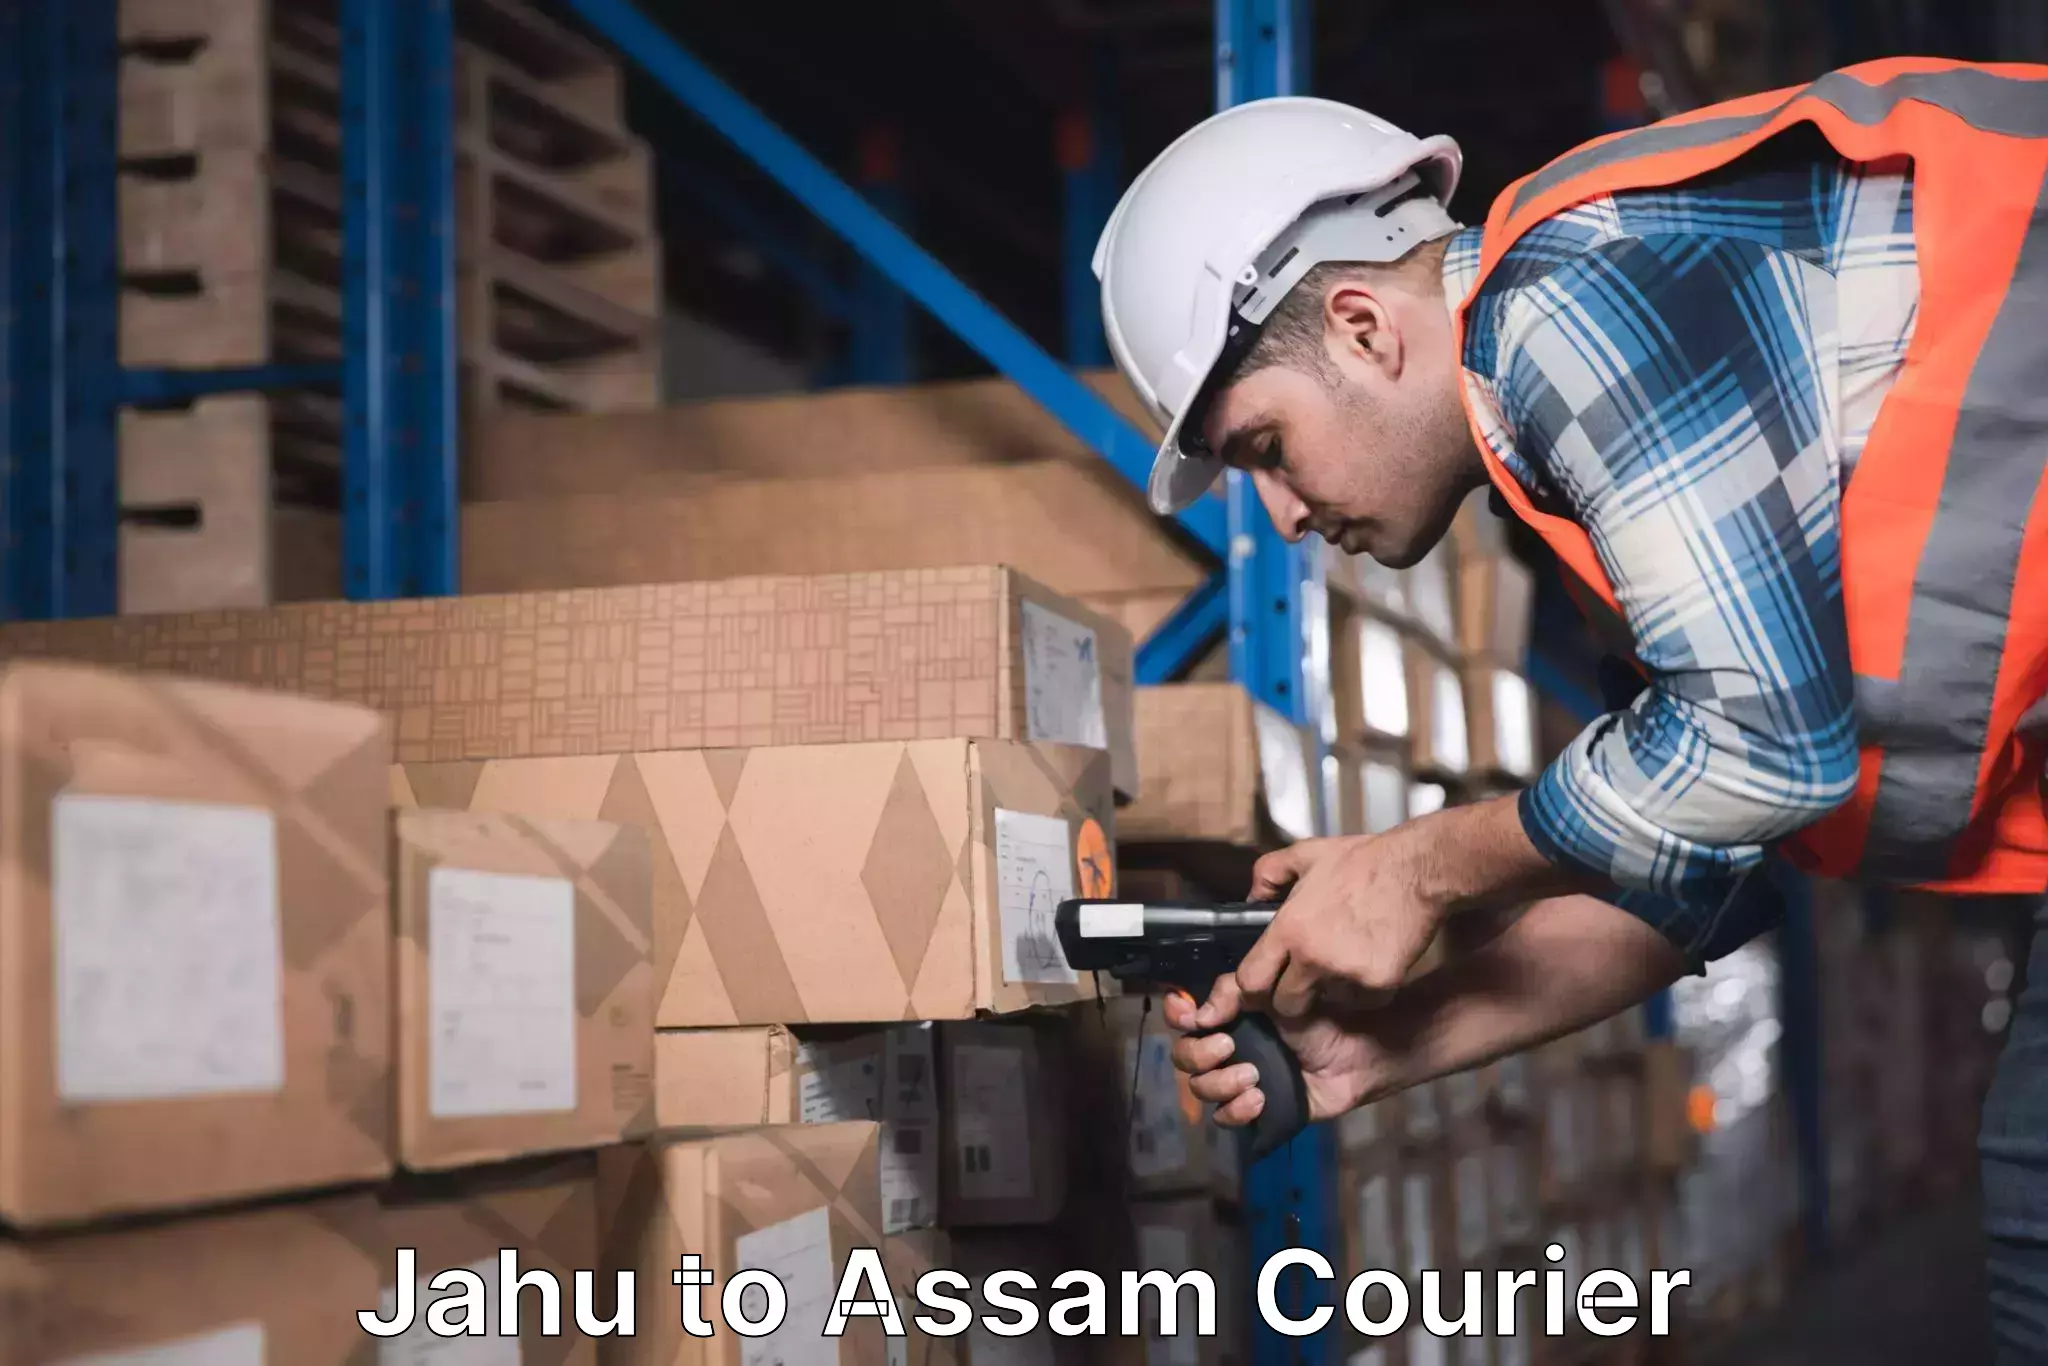 Courier service innovation Jahu to Baihata